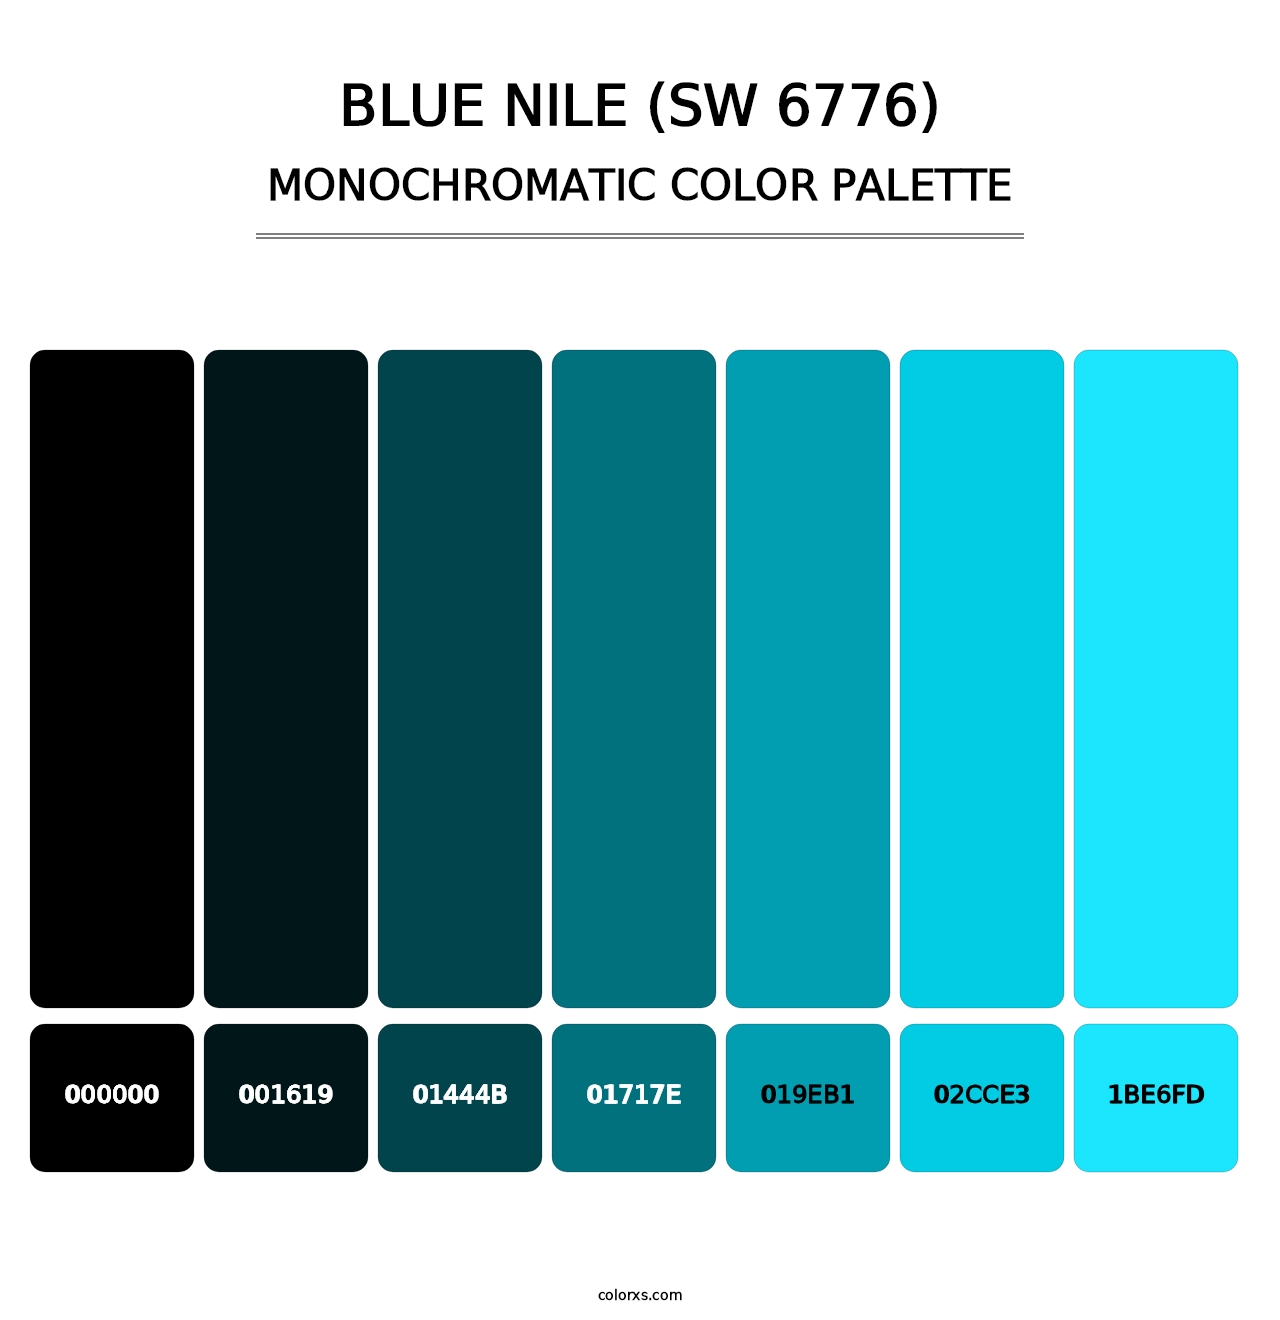 Blue Nile (SW 6776) - Monochromatic Color Palette